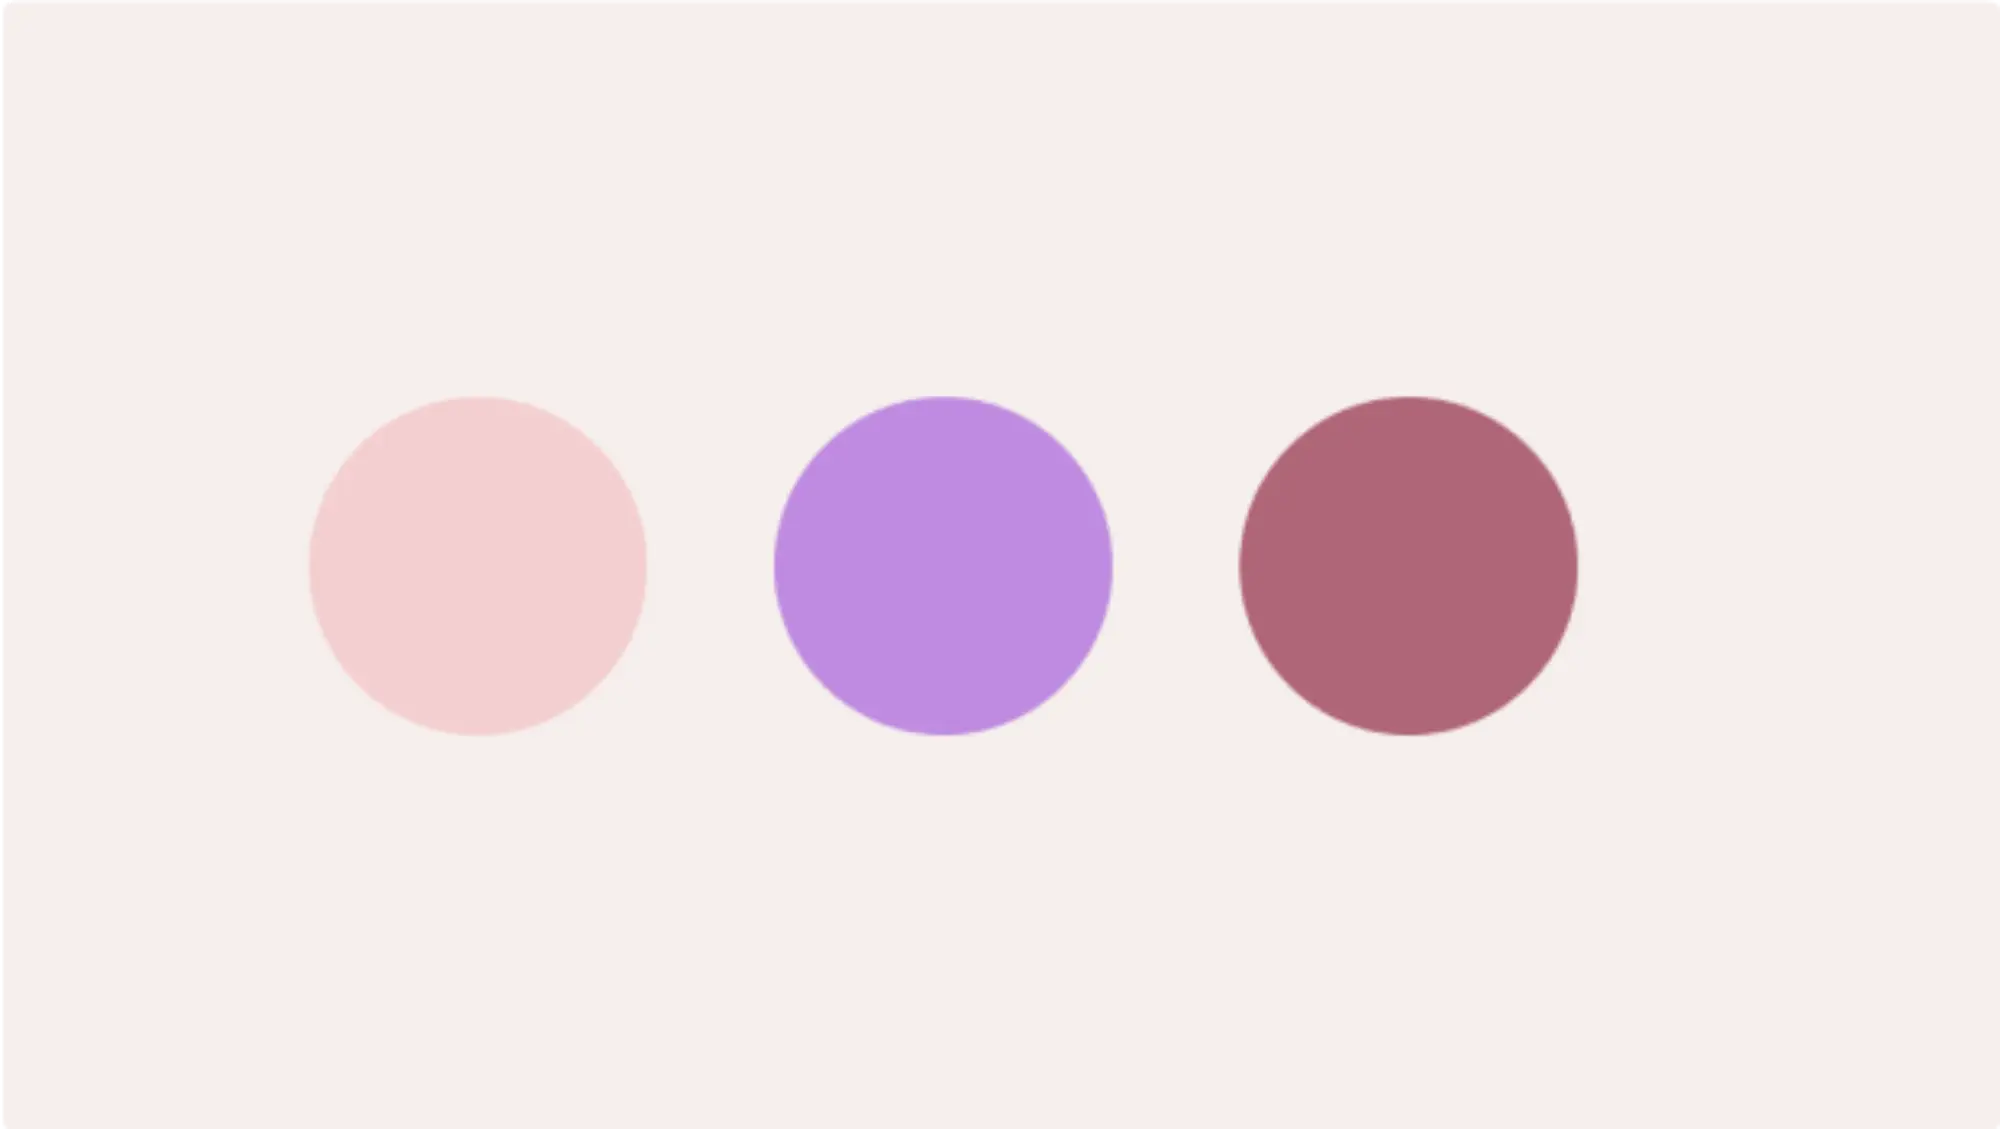 Trzy koła w podobnych odcieniach – różowy, fioletowy